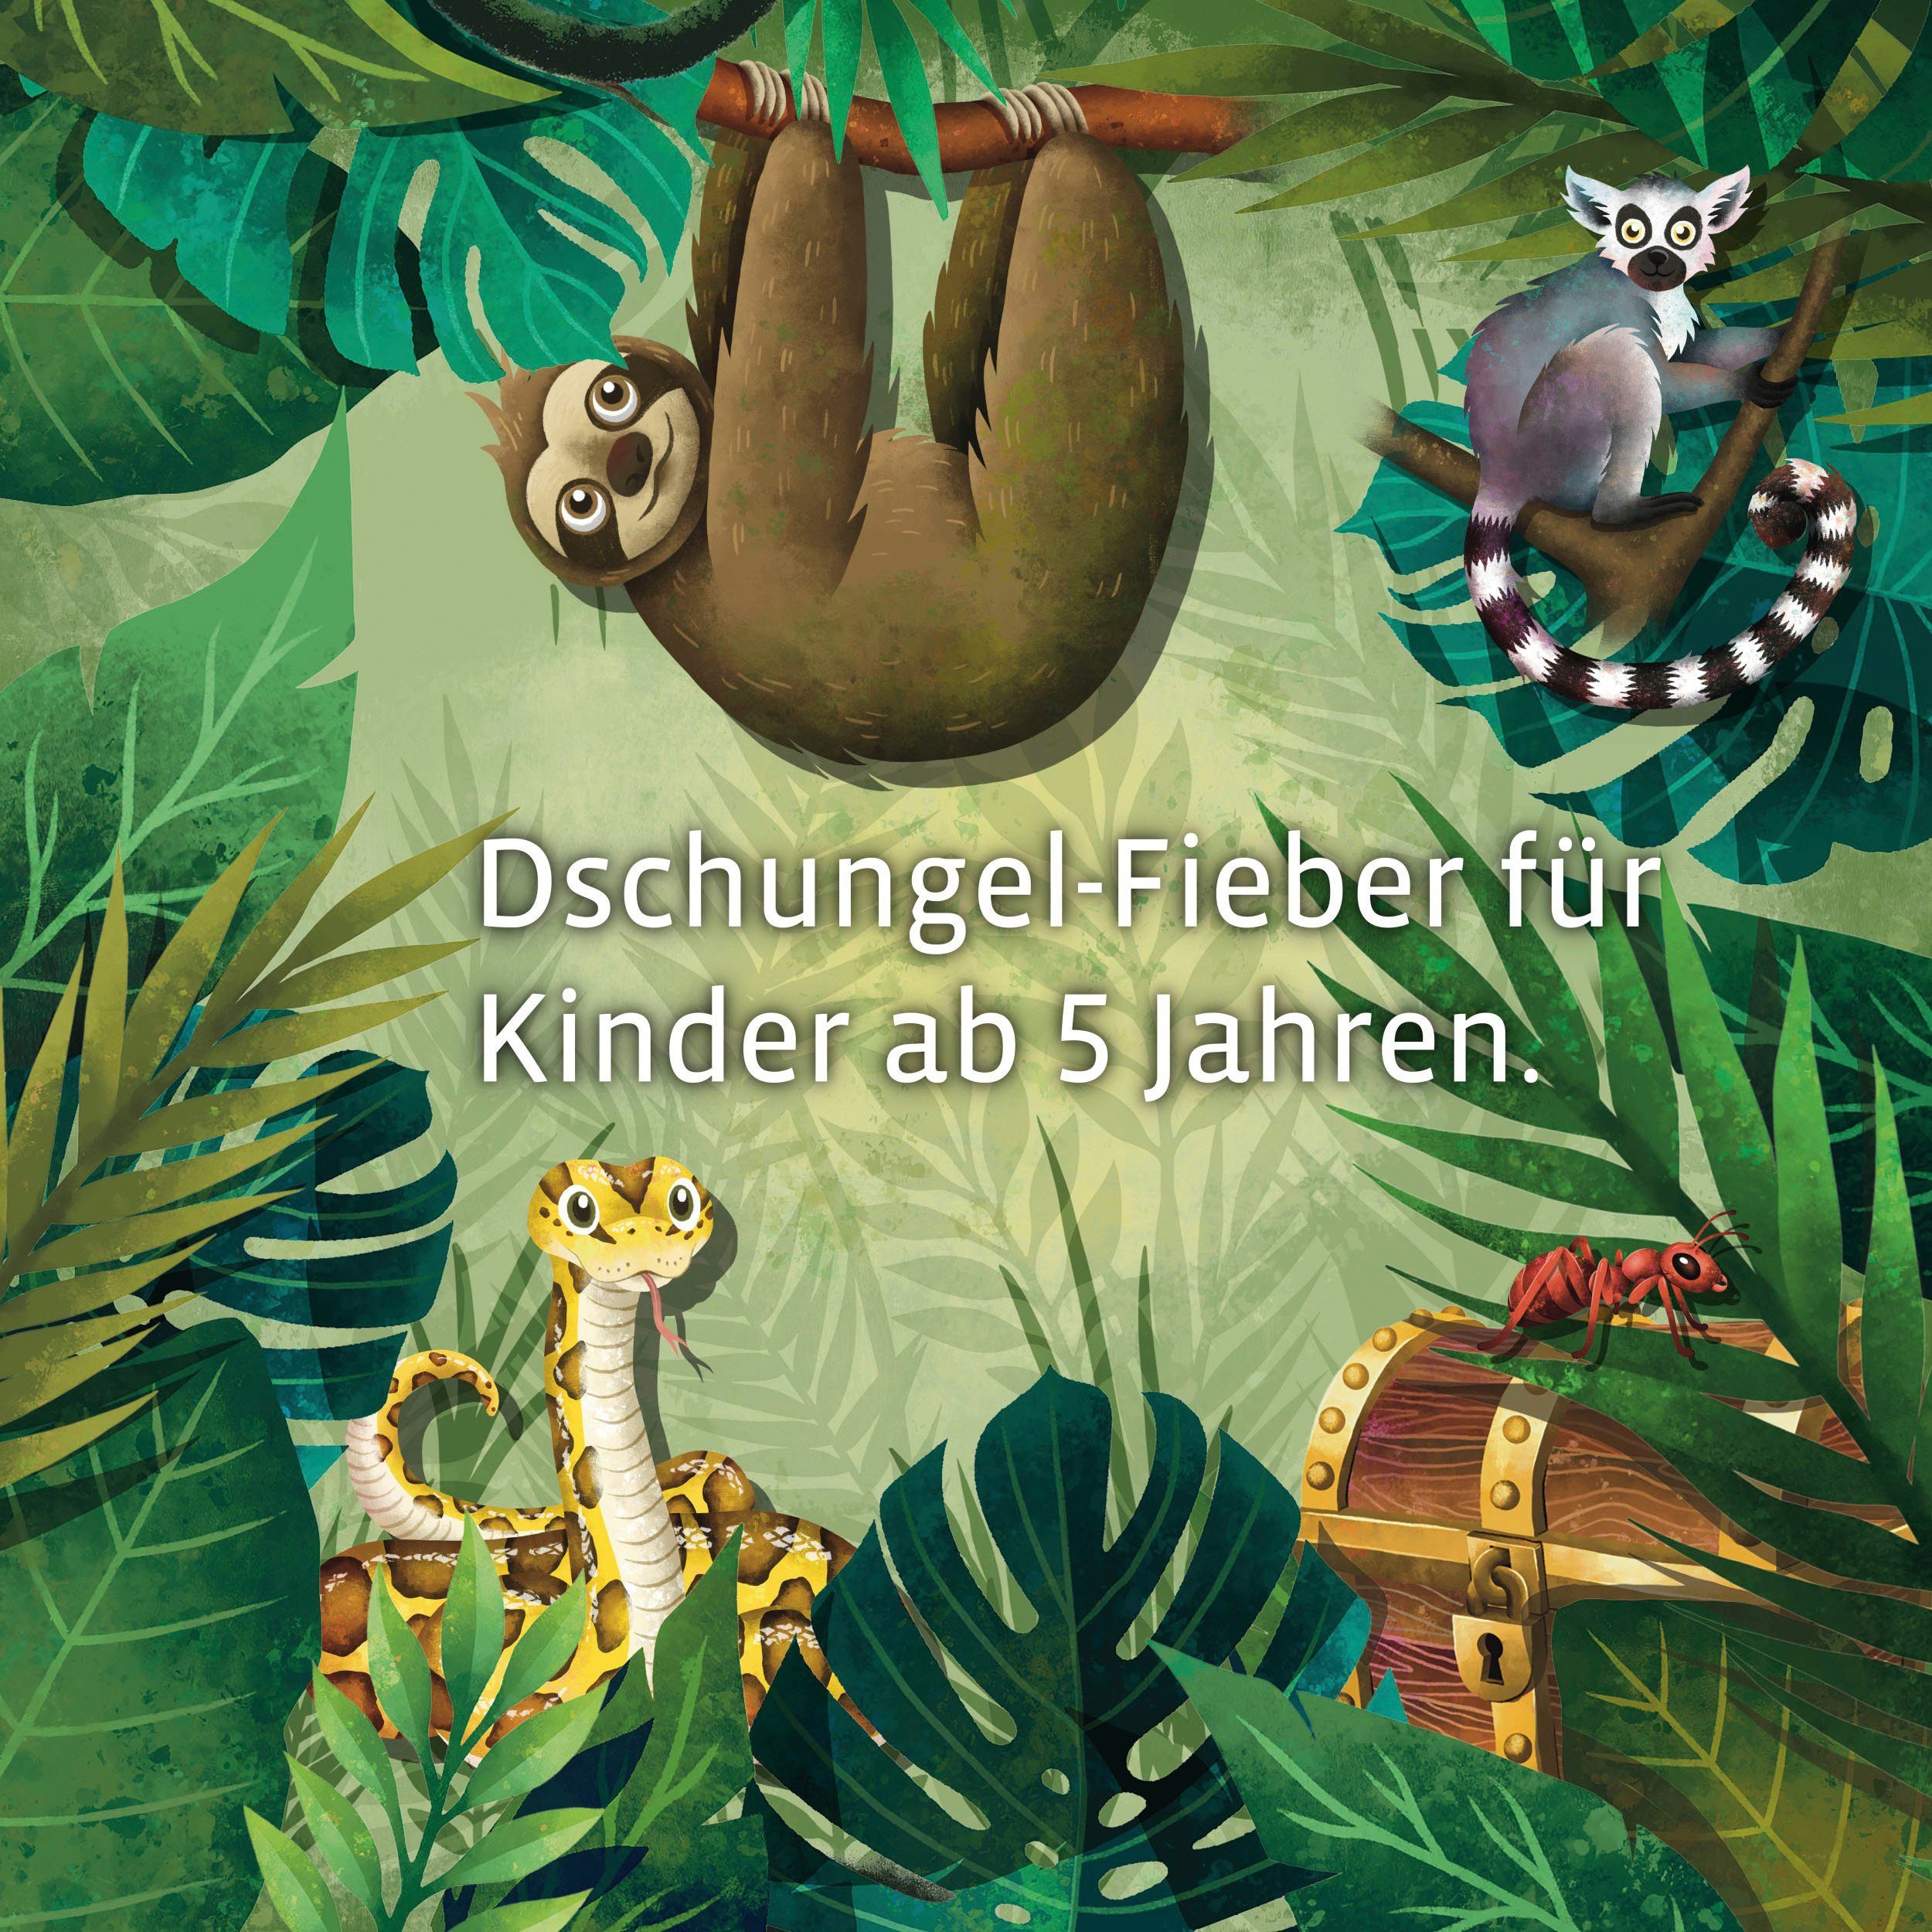 Rätselspaß Dschungel, Kids: Made in - Kinderspiel Das im Spiel Germany Spiel, Kosmos EXIT®